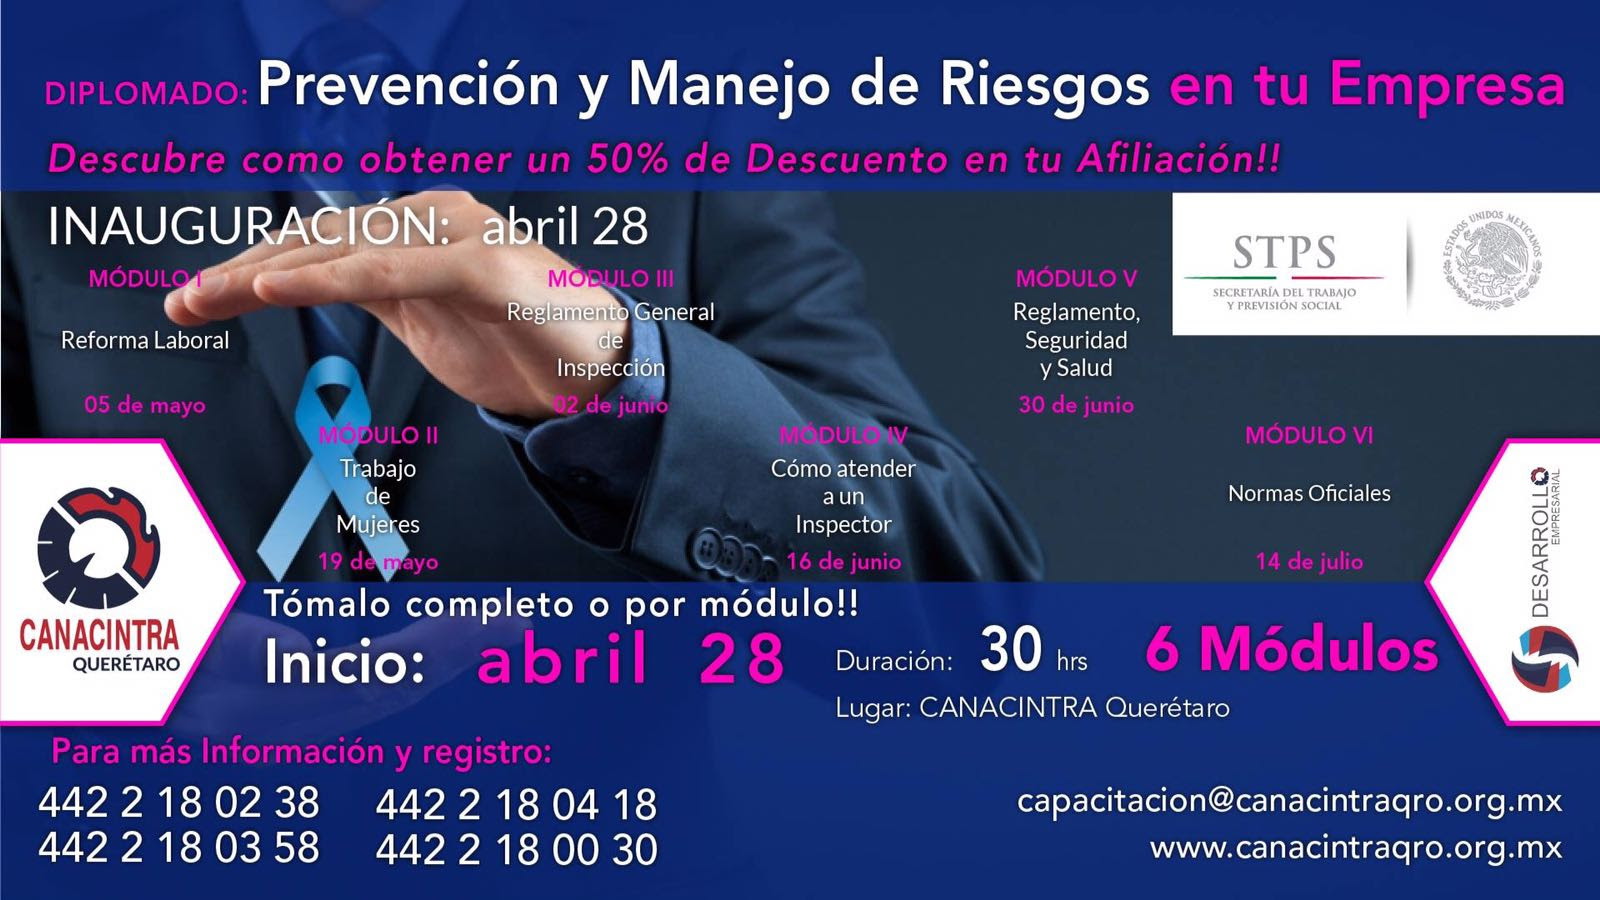  Inaugura Canacintra este 28 de abril diplomado de prevención y manejo de riesgos en las empresas